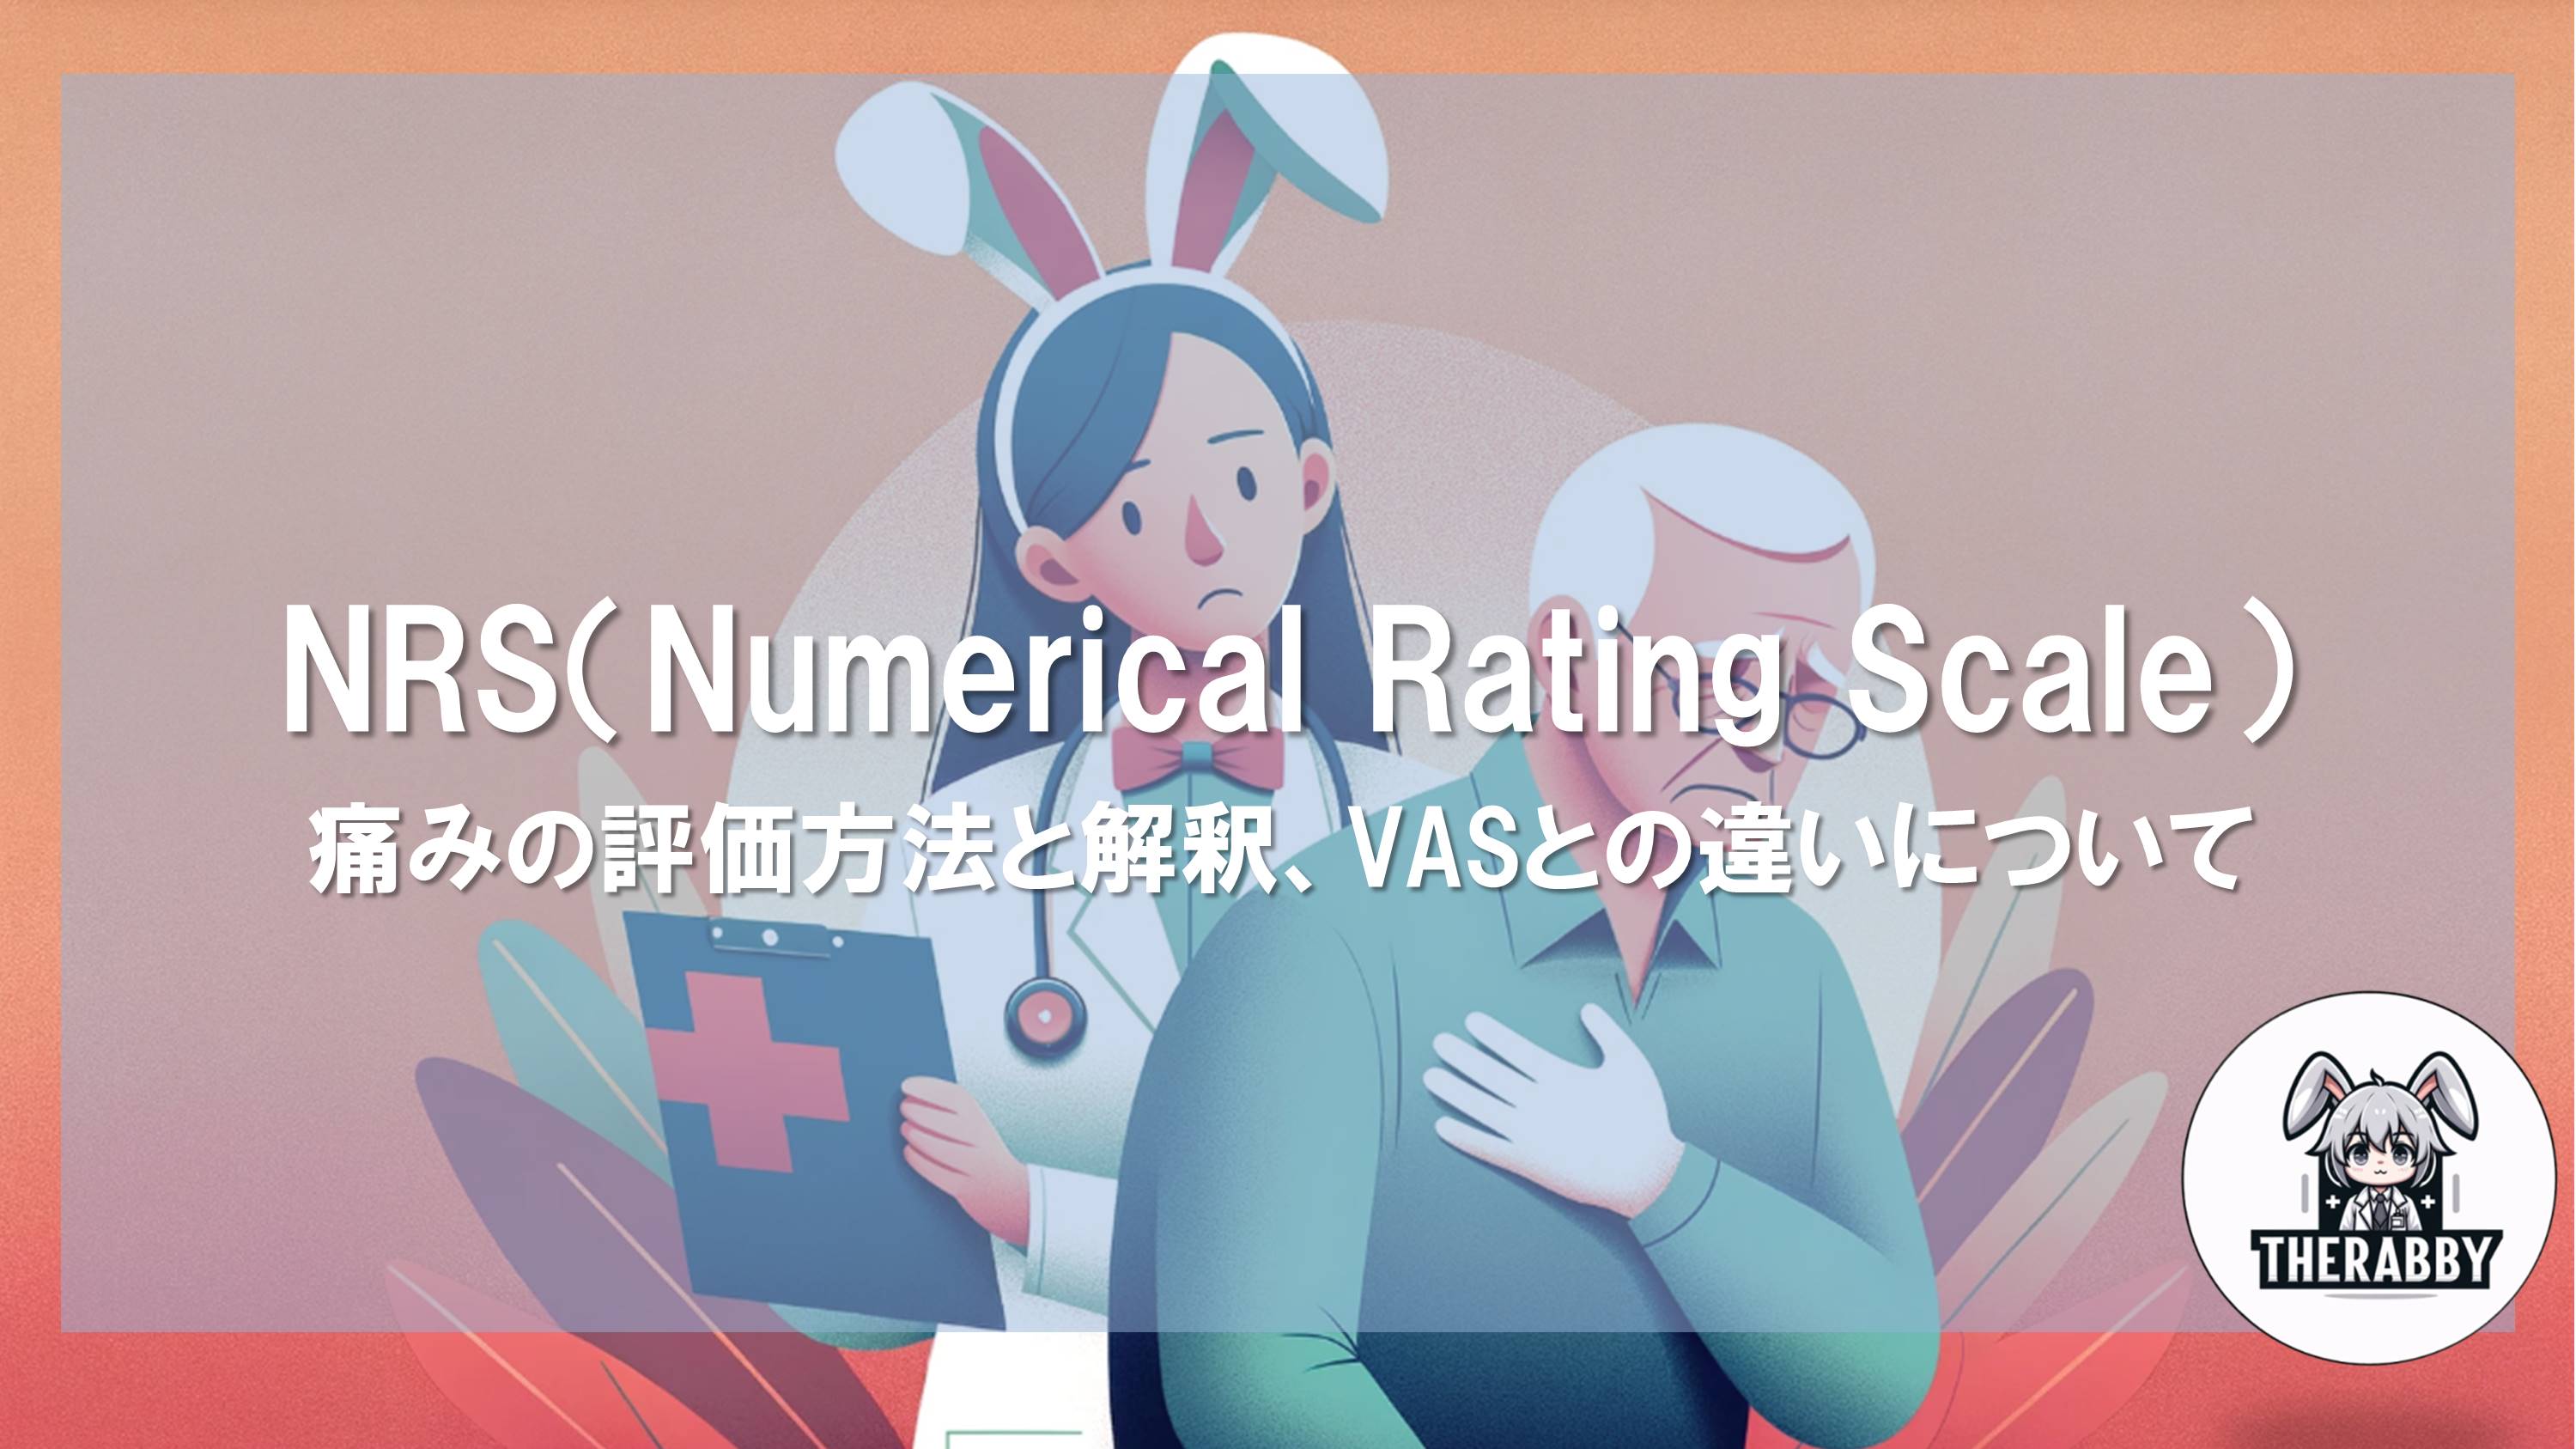 NRS（Numerical Rating Scale）- 痛みの評価方法と解釈、VASとの違いについて